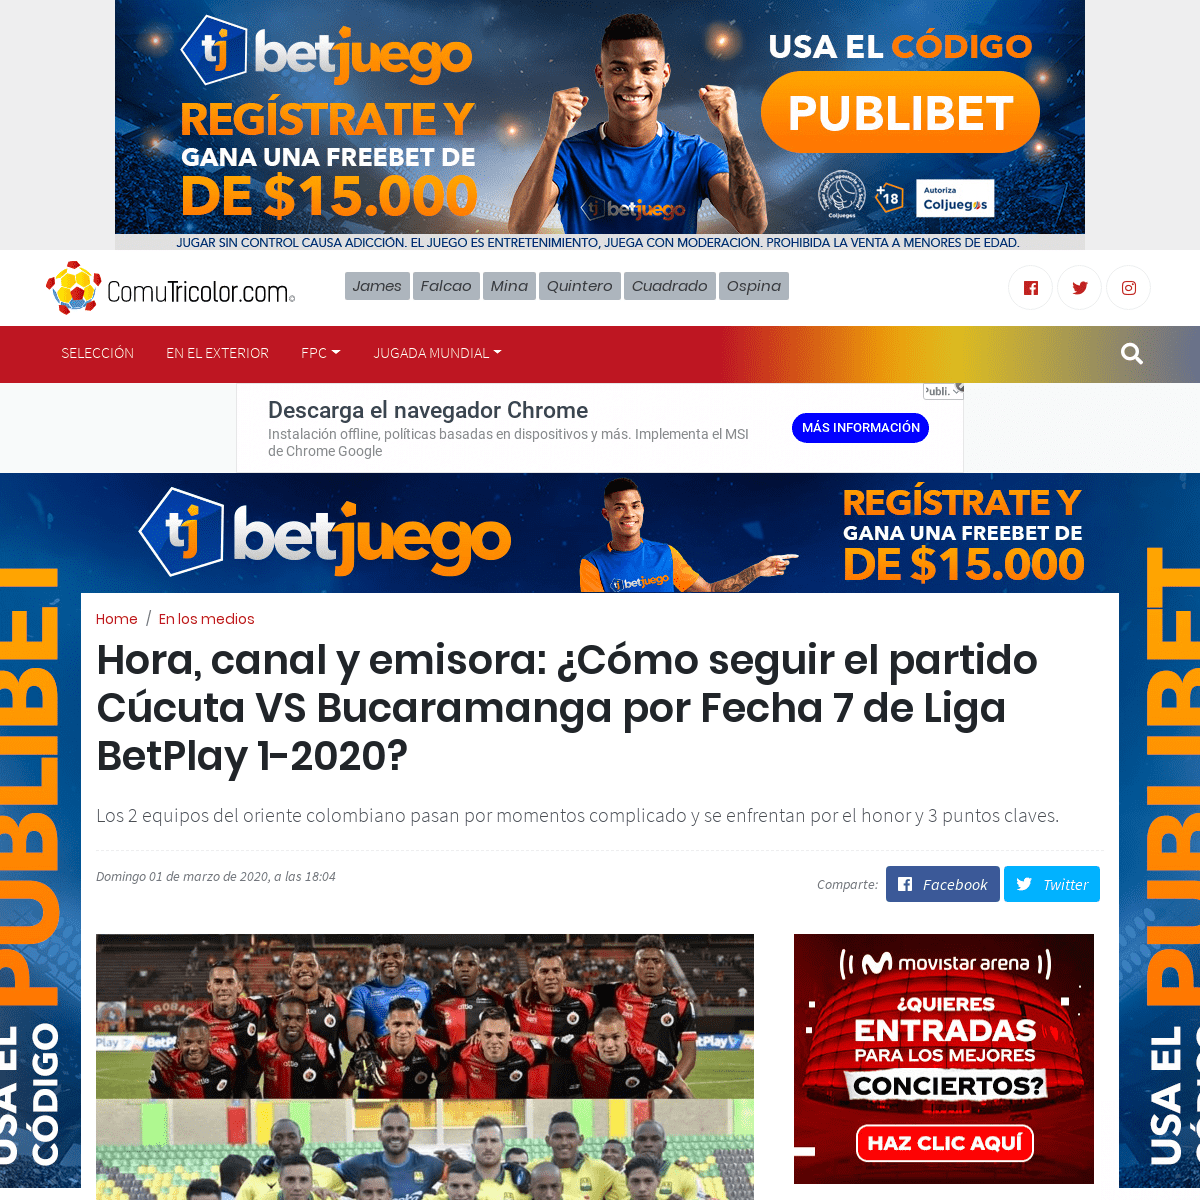 A complete backup of comutricolor.com/en-los-medios/vivo-partido-cucuta-vs-bucaramanga-por-fecha-7-de-liga-betplay-1-2020/